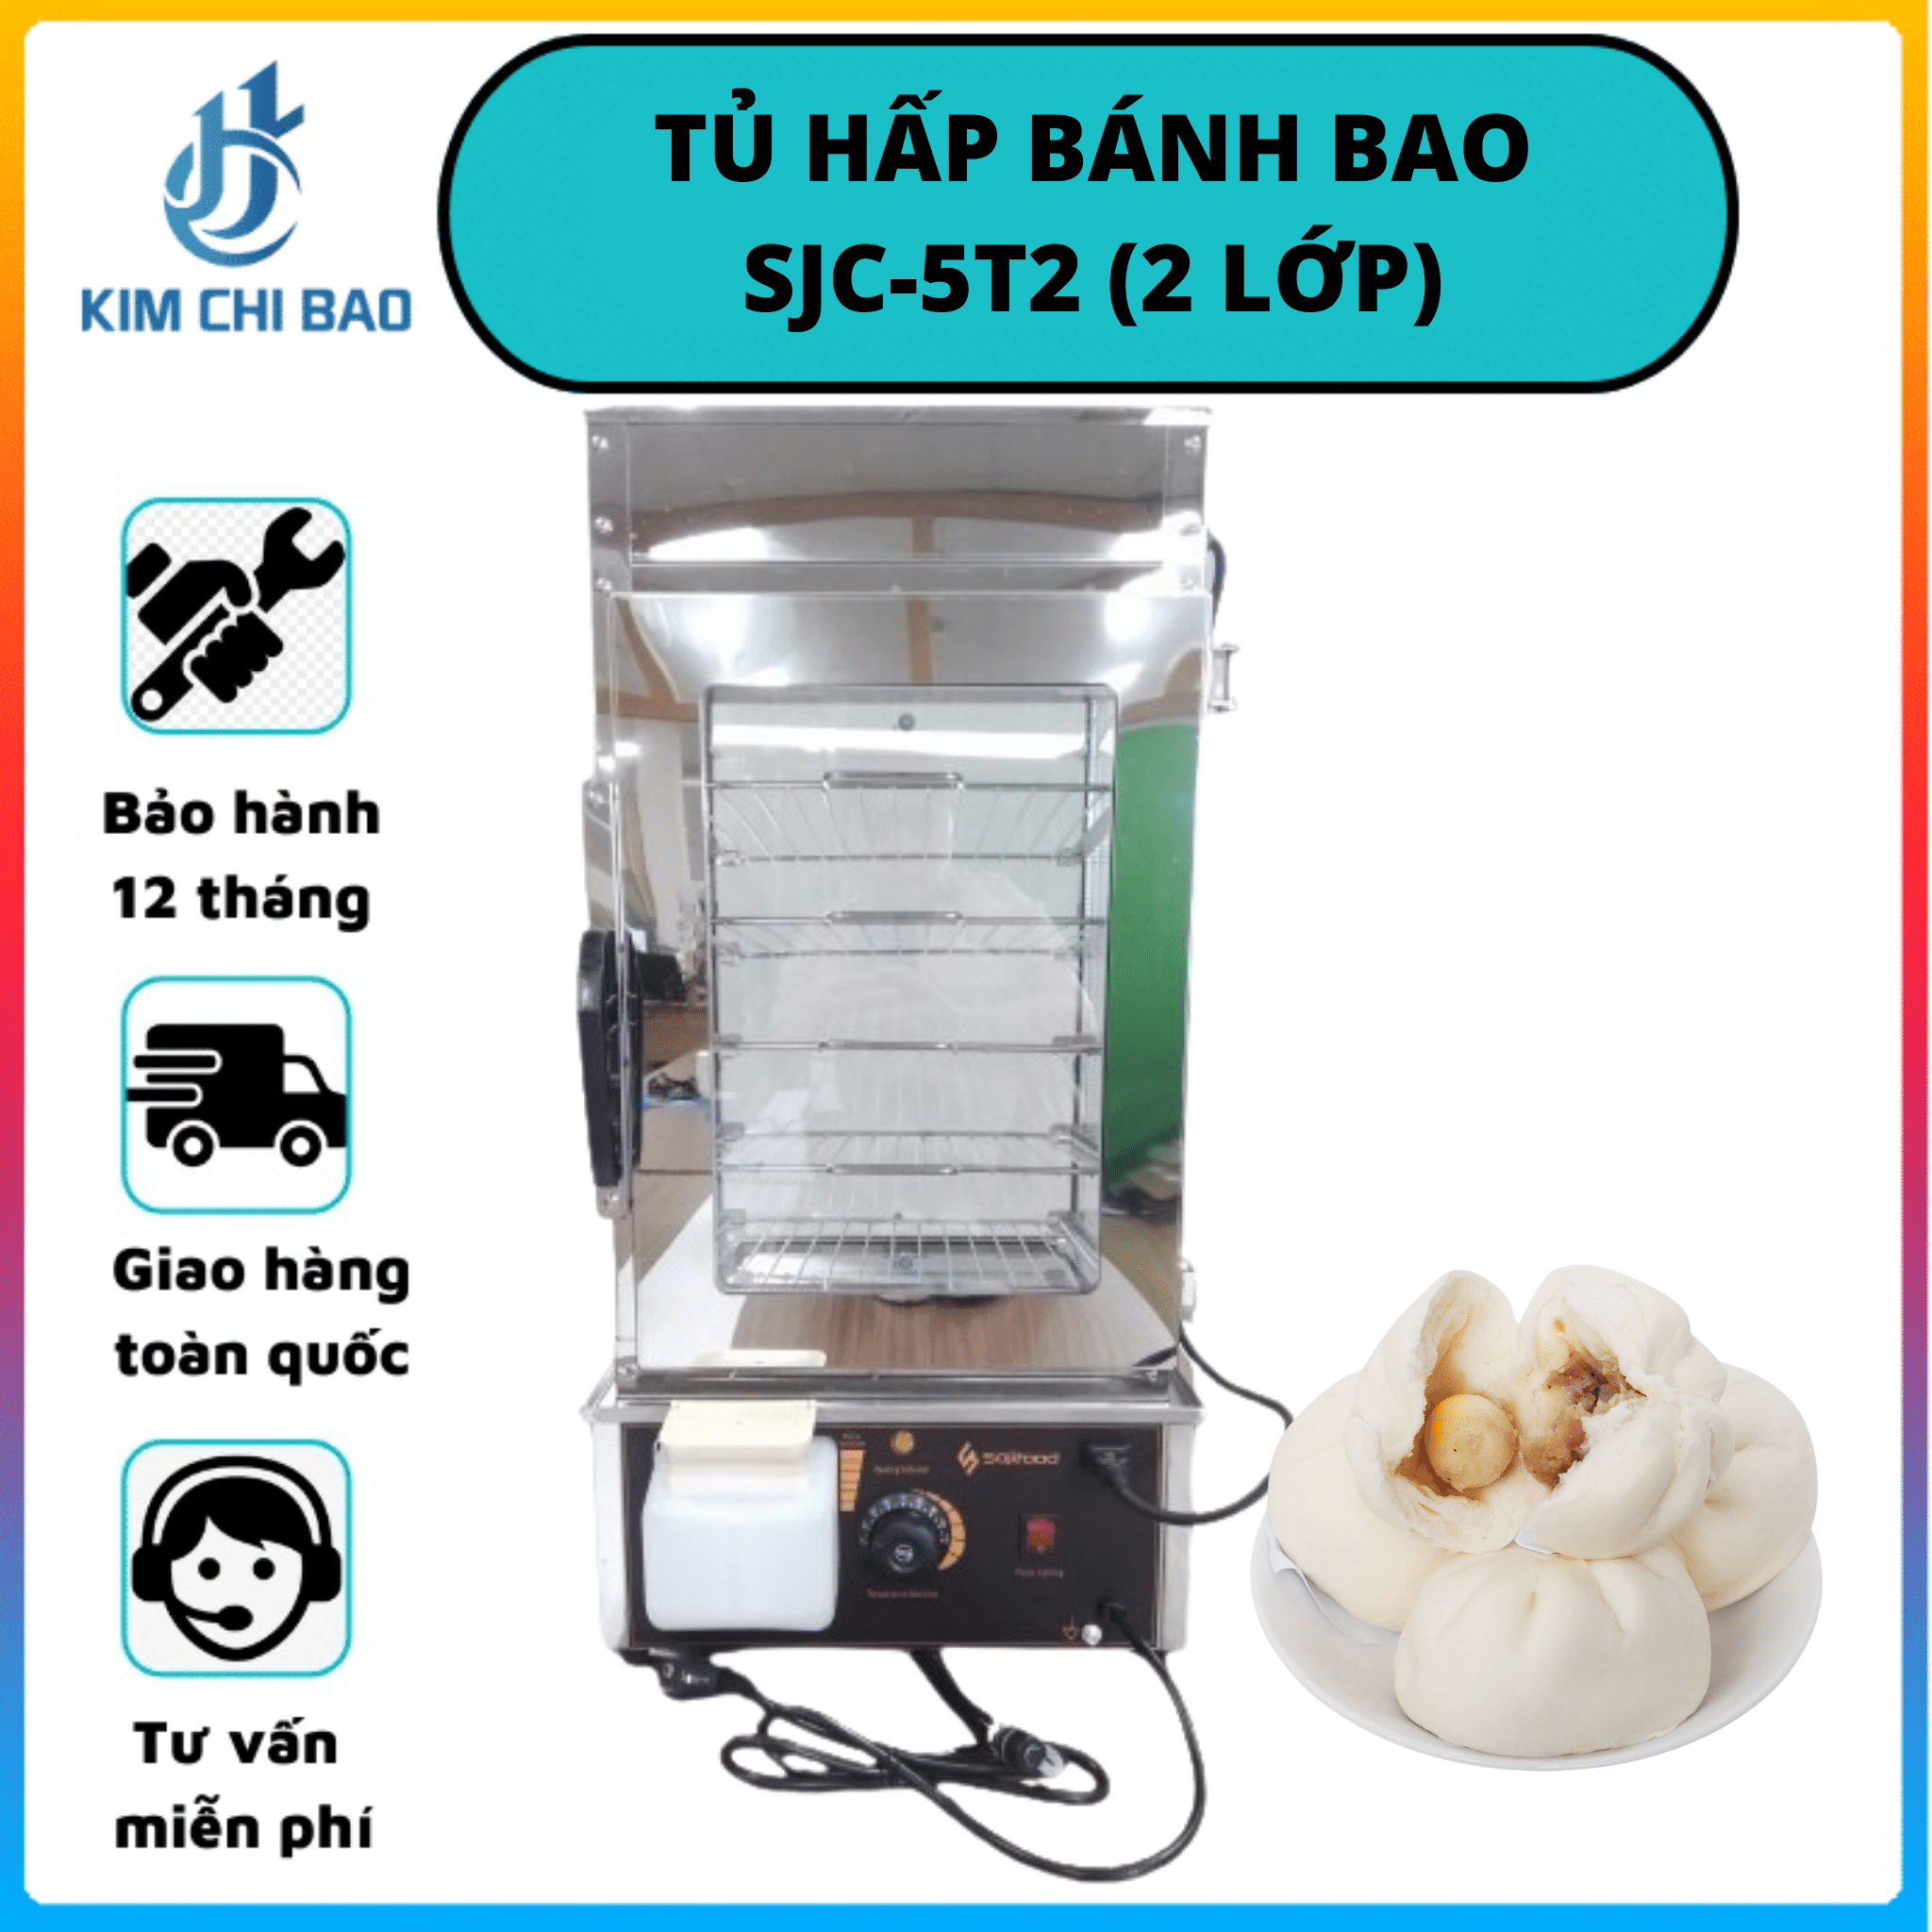 Tủ hấp bánh bao SJC-5T2 (2 lớp)